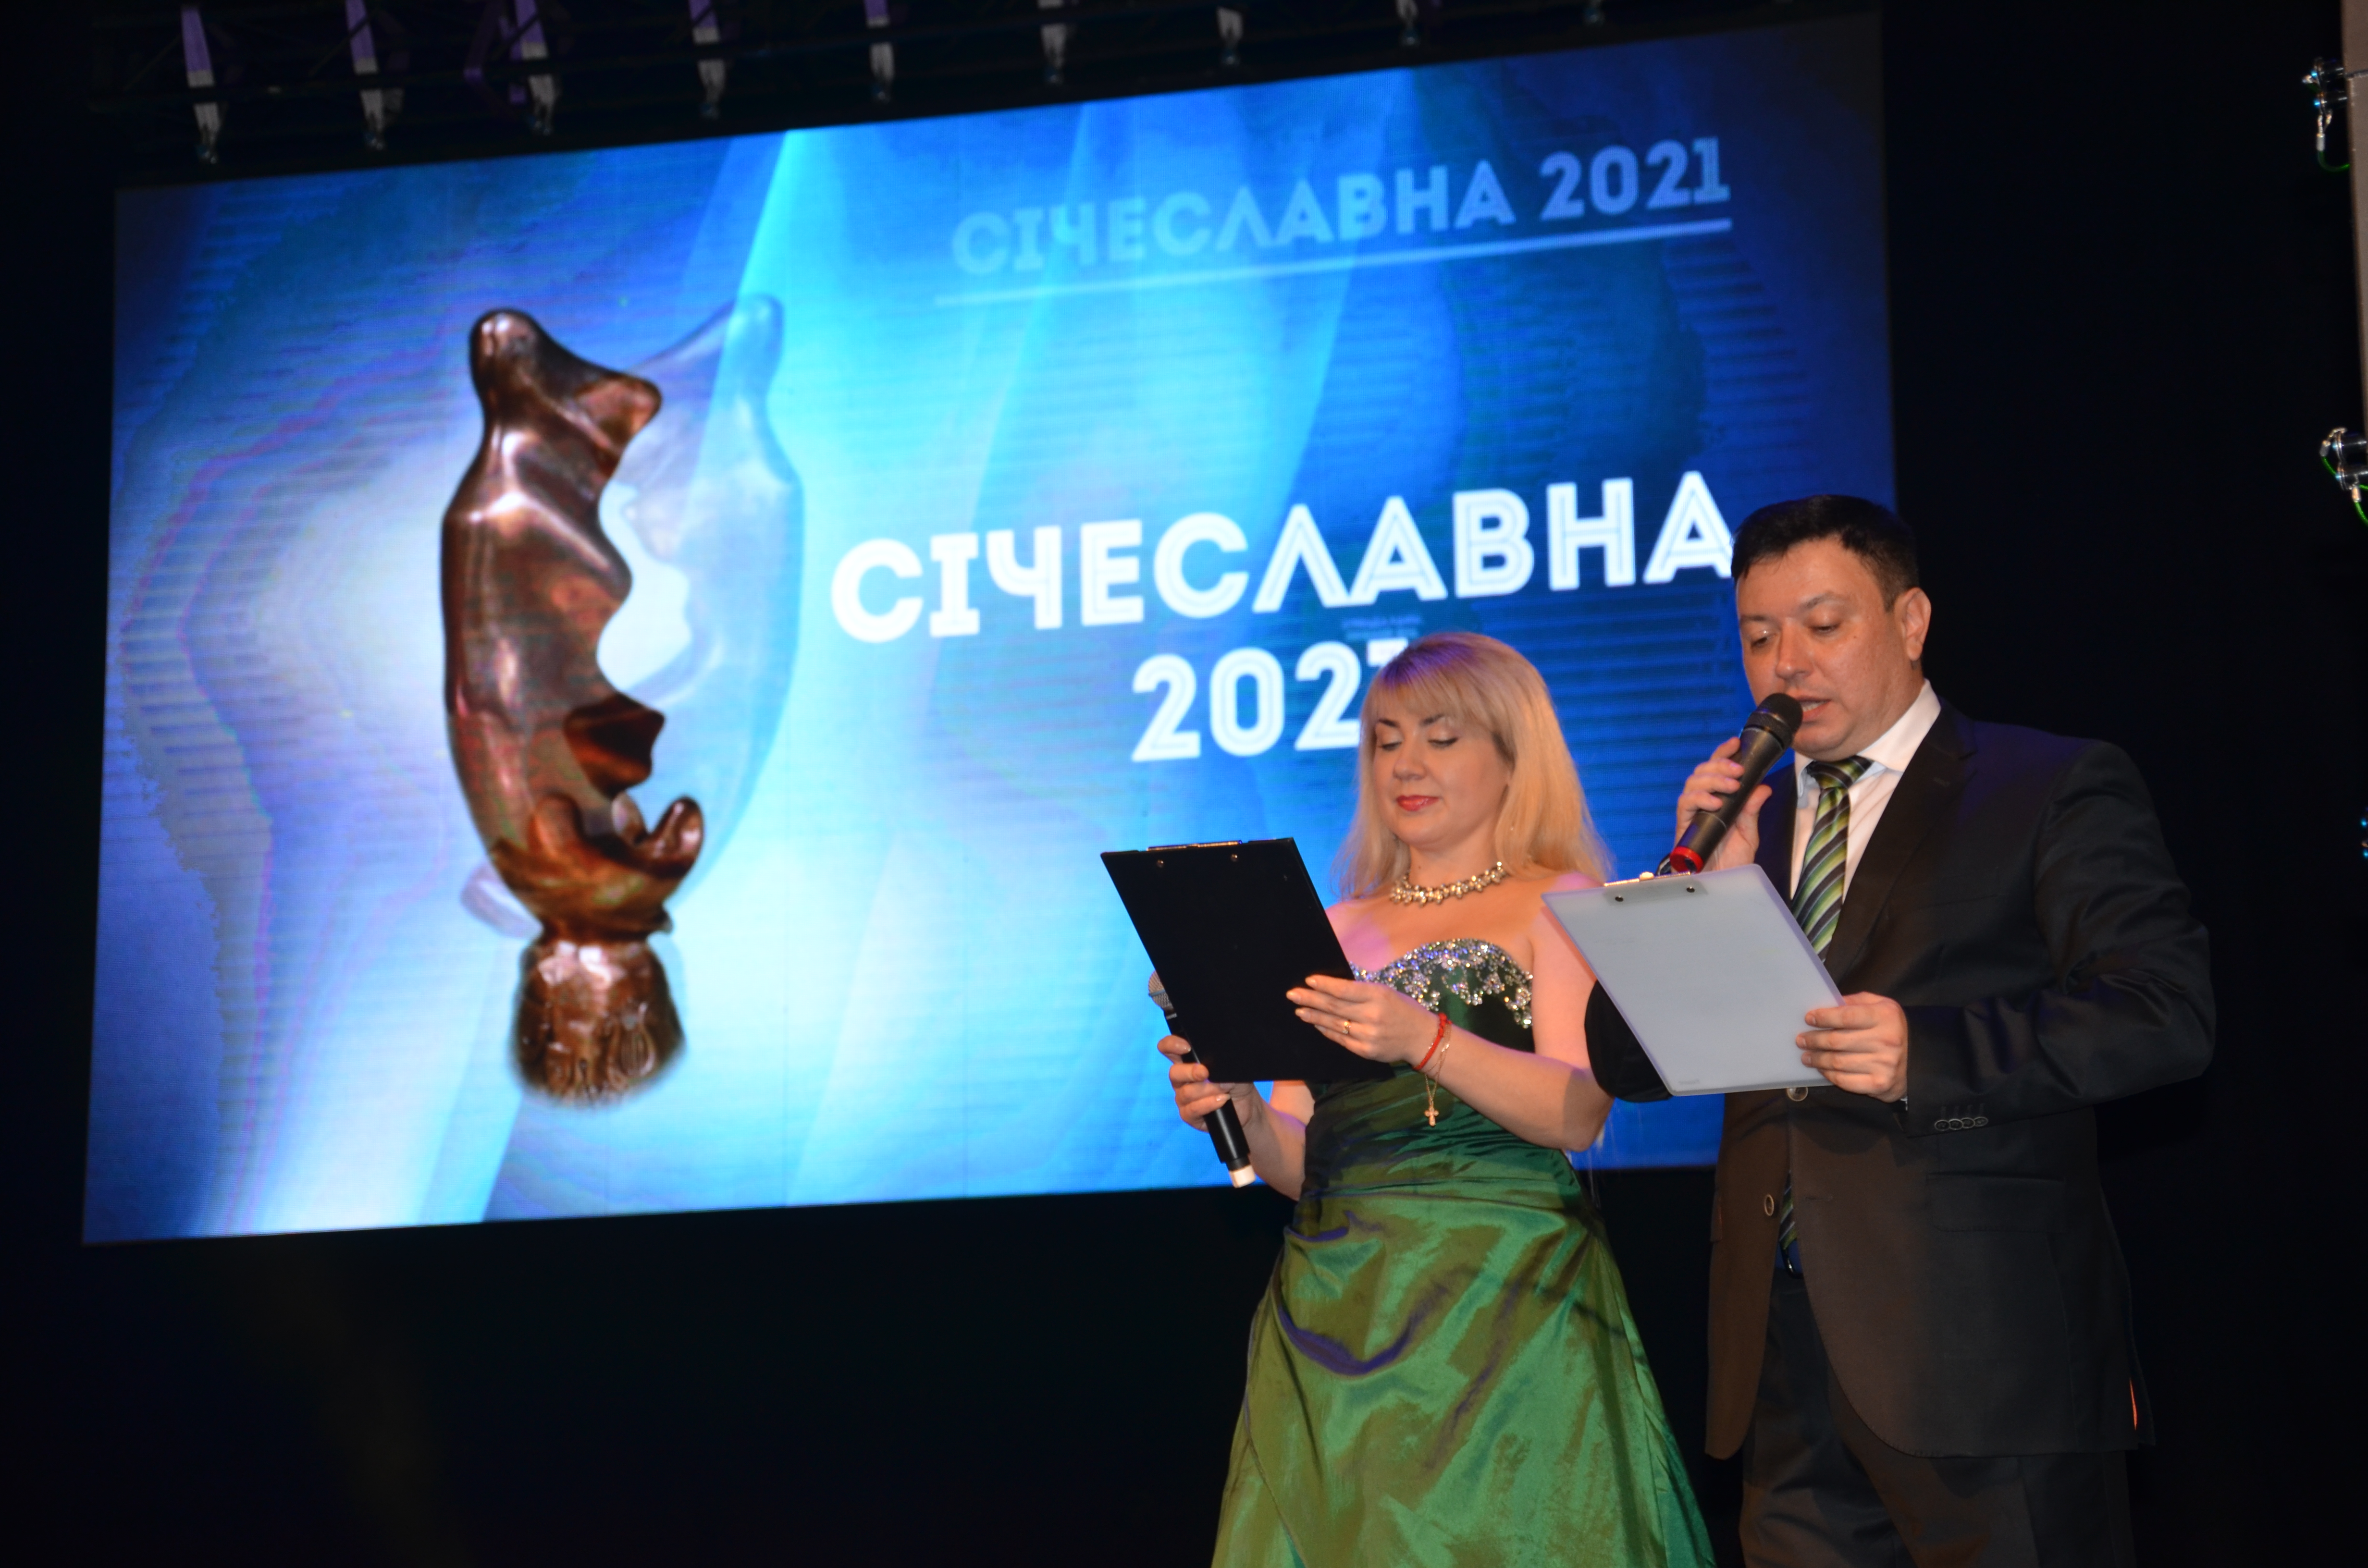 Спектакль театралов из Кривого Рога получил Гран-при на фестивале «Сичеславна-2021»